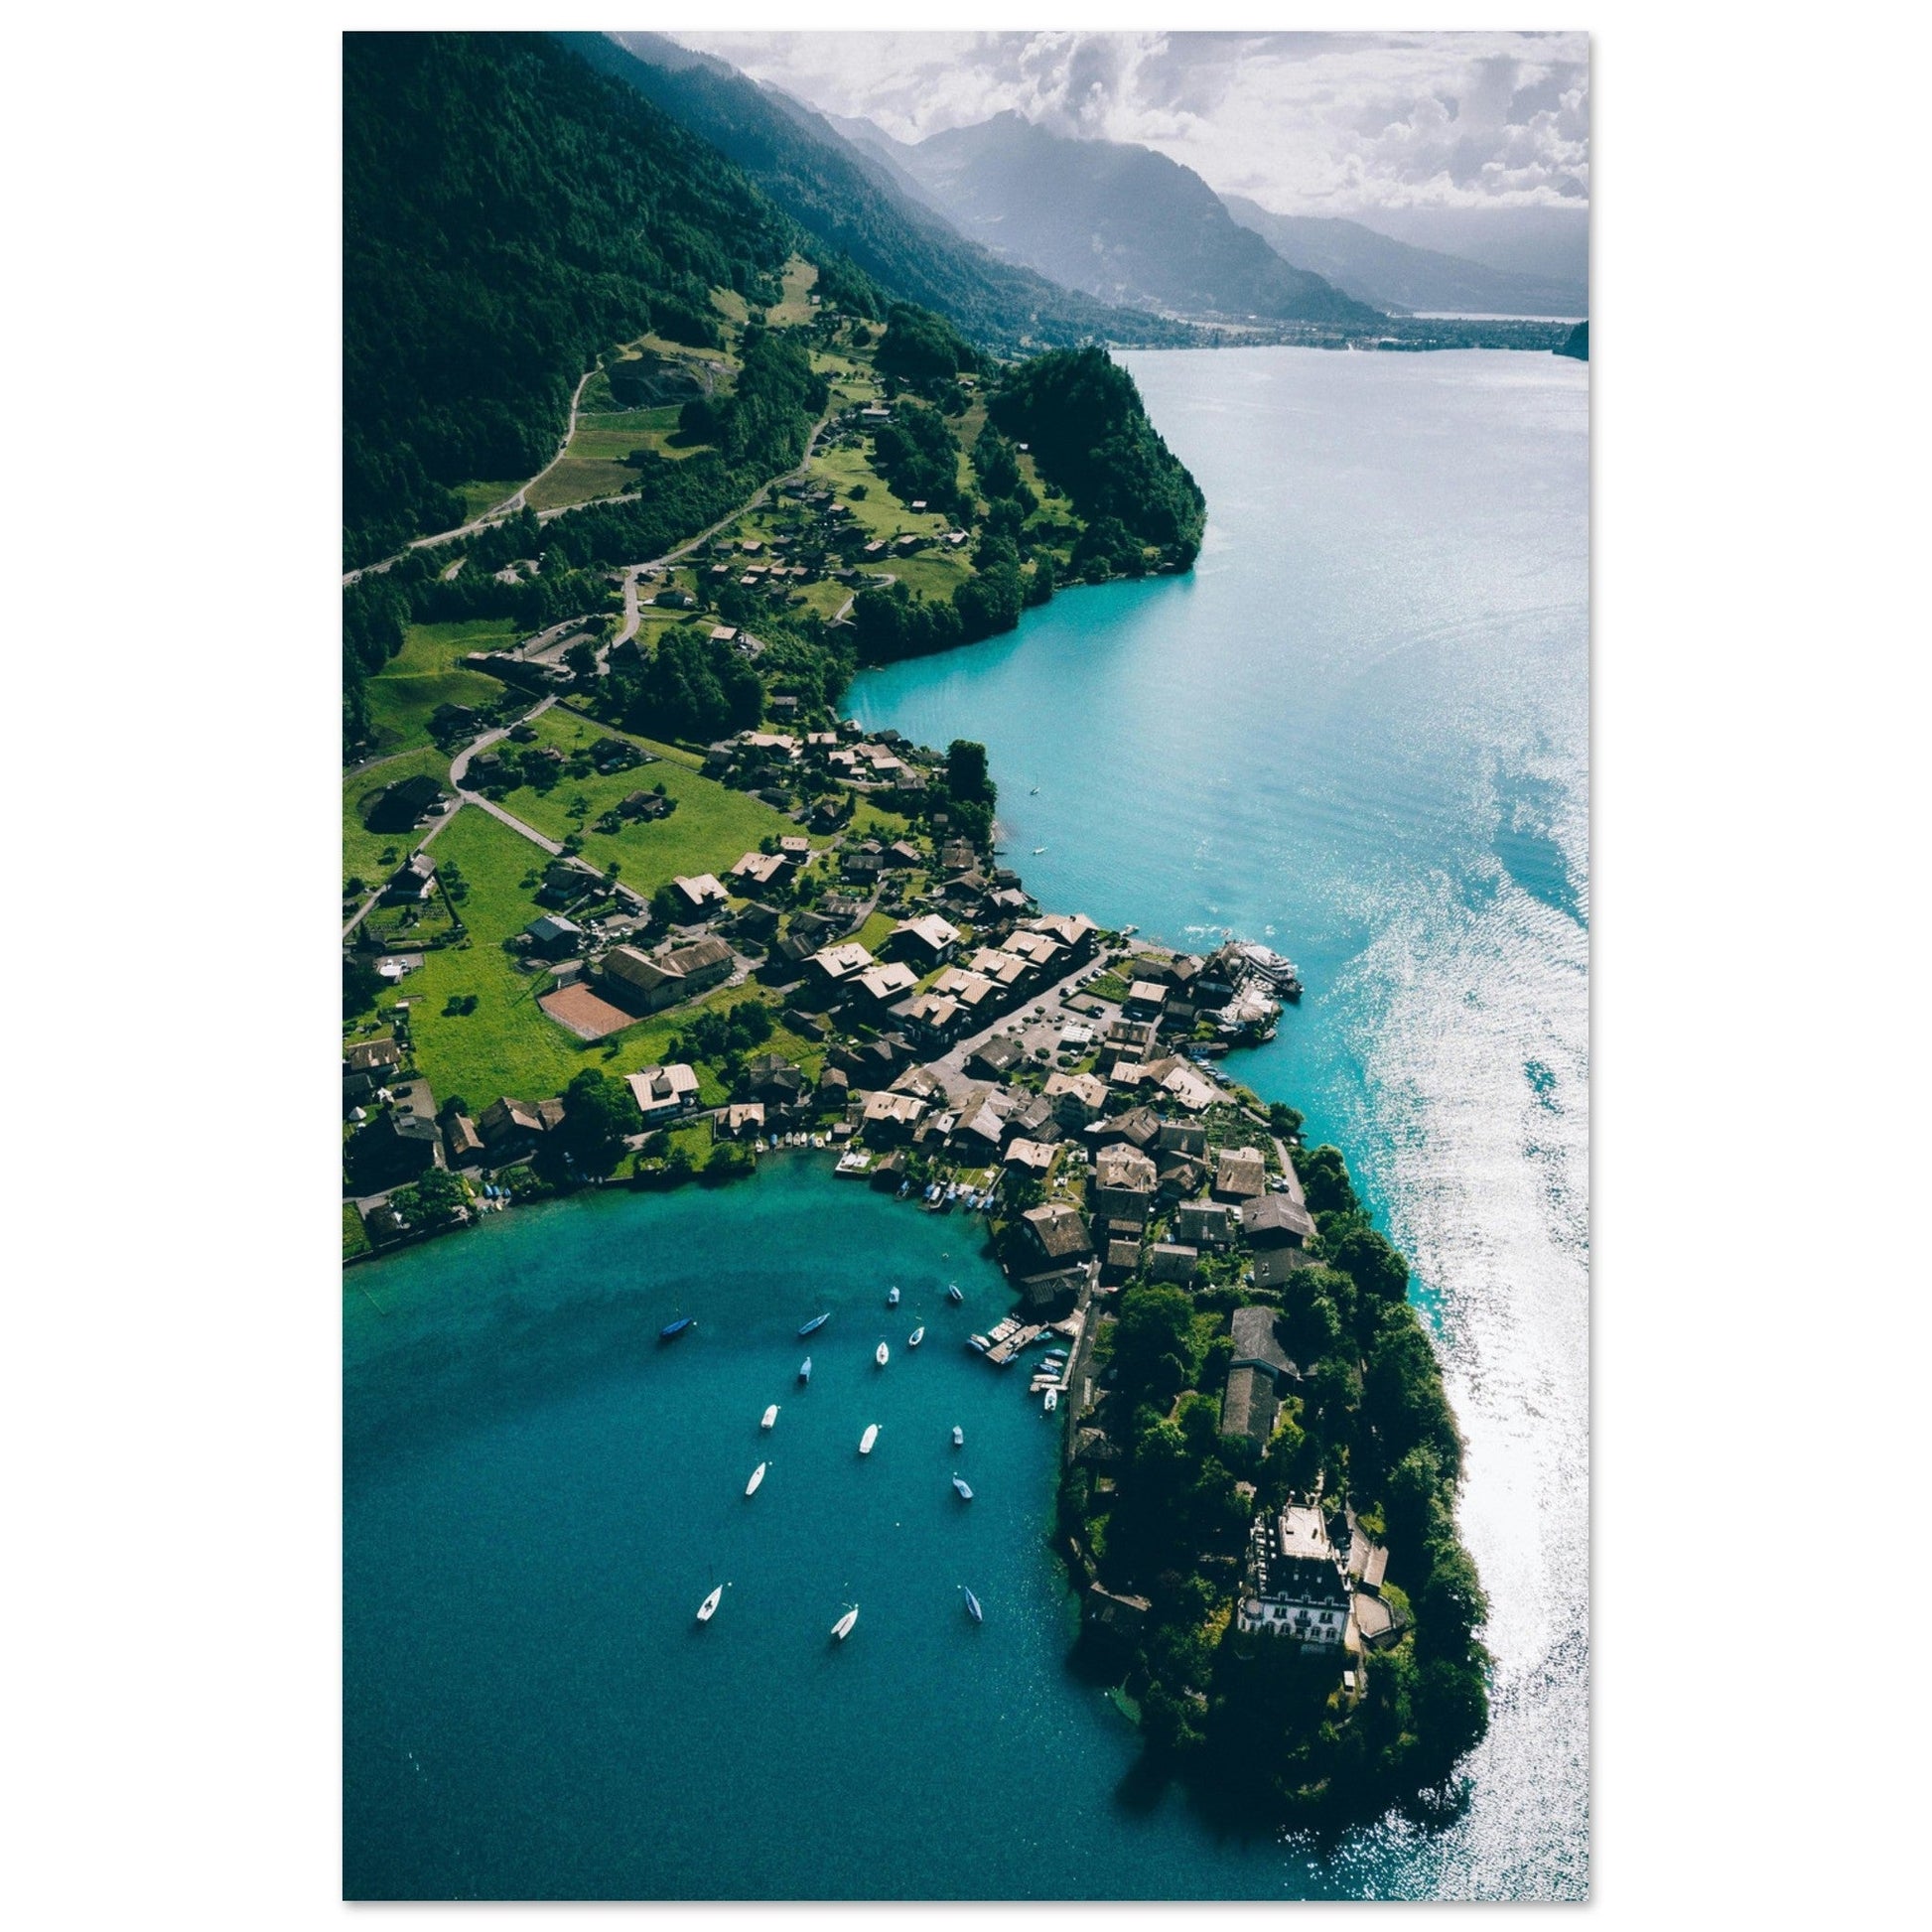 Vente Photo drone du Lac de Bachalp, Grindelwald, Suisse - Tableau photo paysage